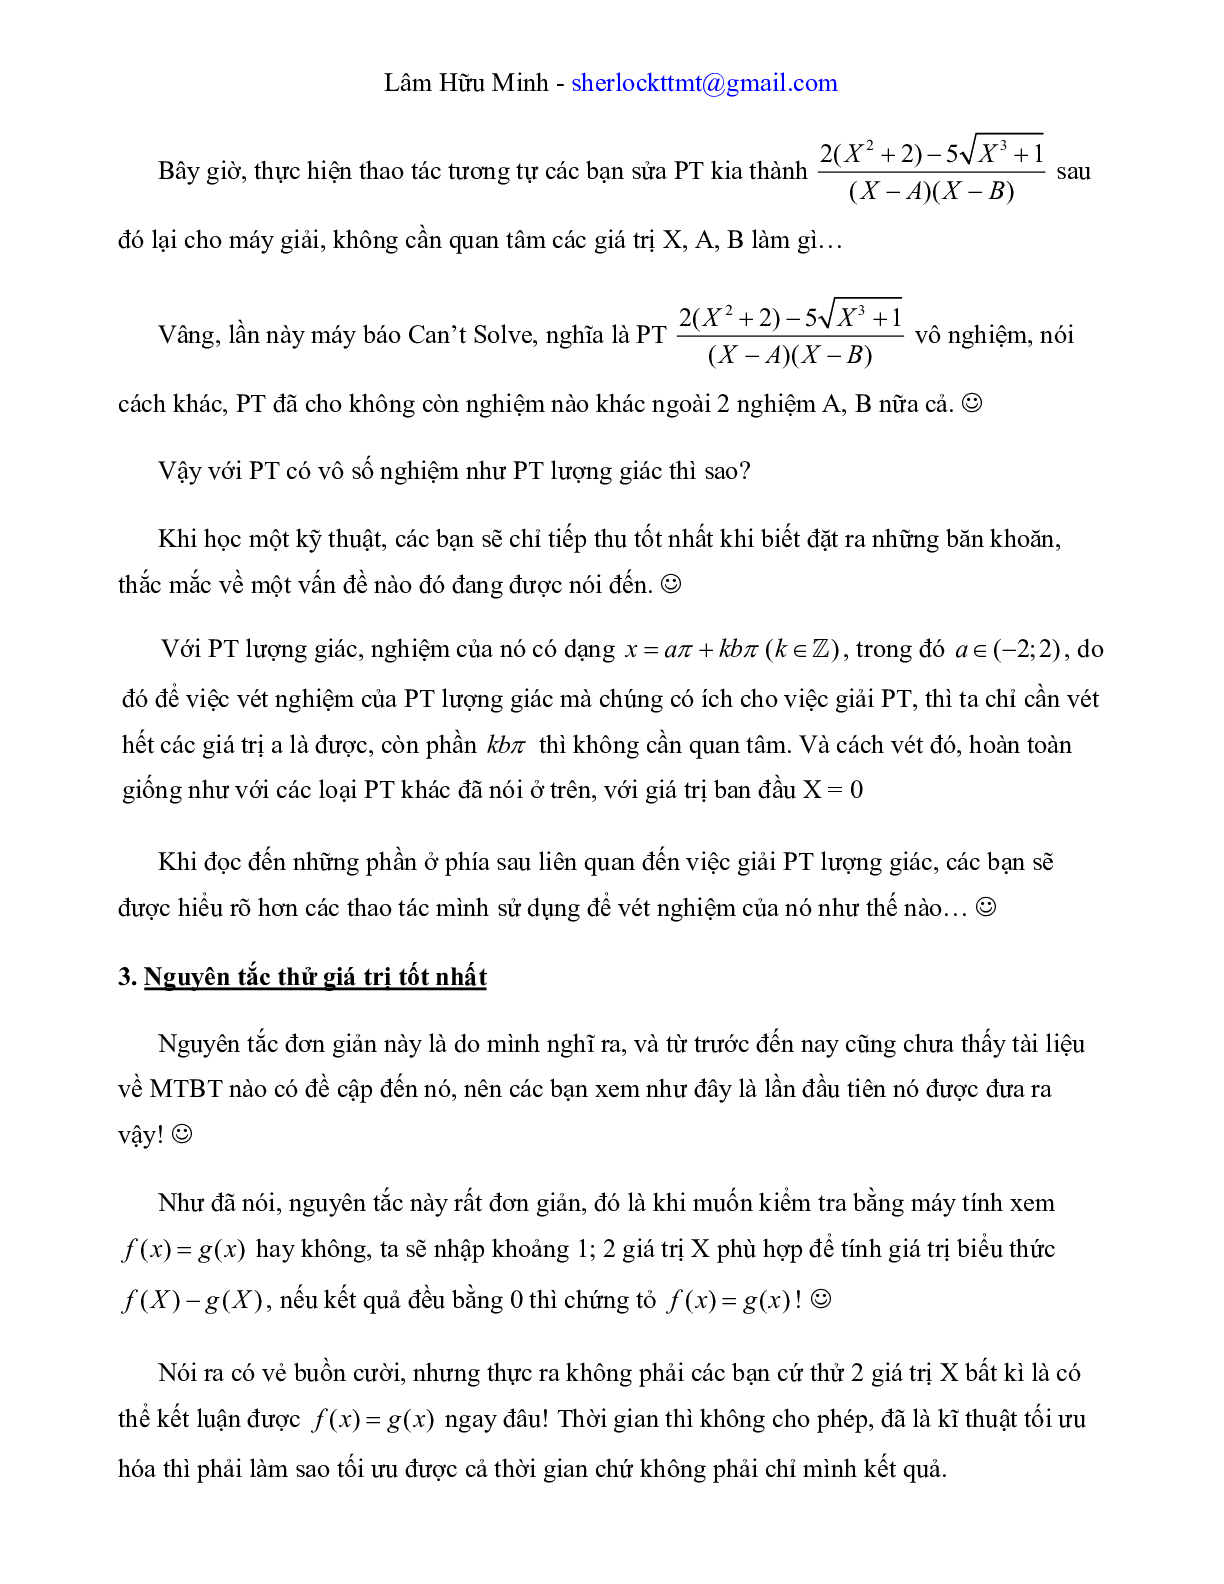 Công phá đề thi THPT QG môn Toán bằng kỹ thuật Casio (trang 9)